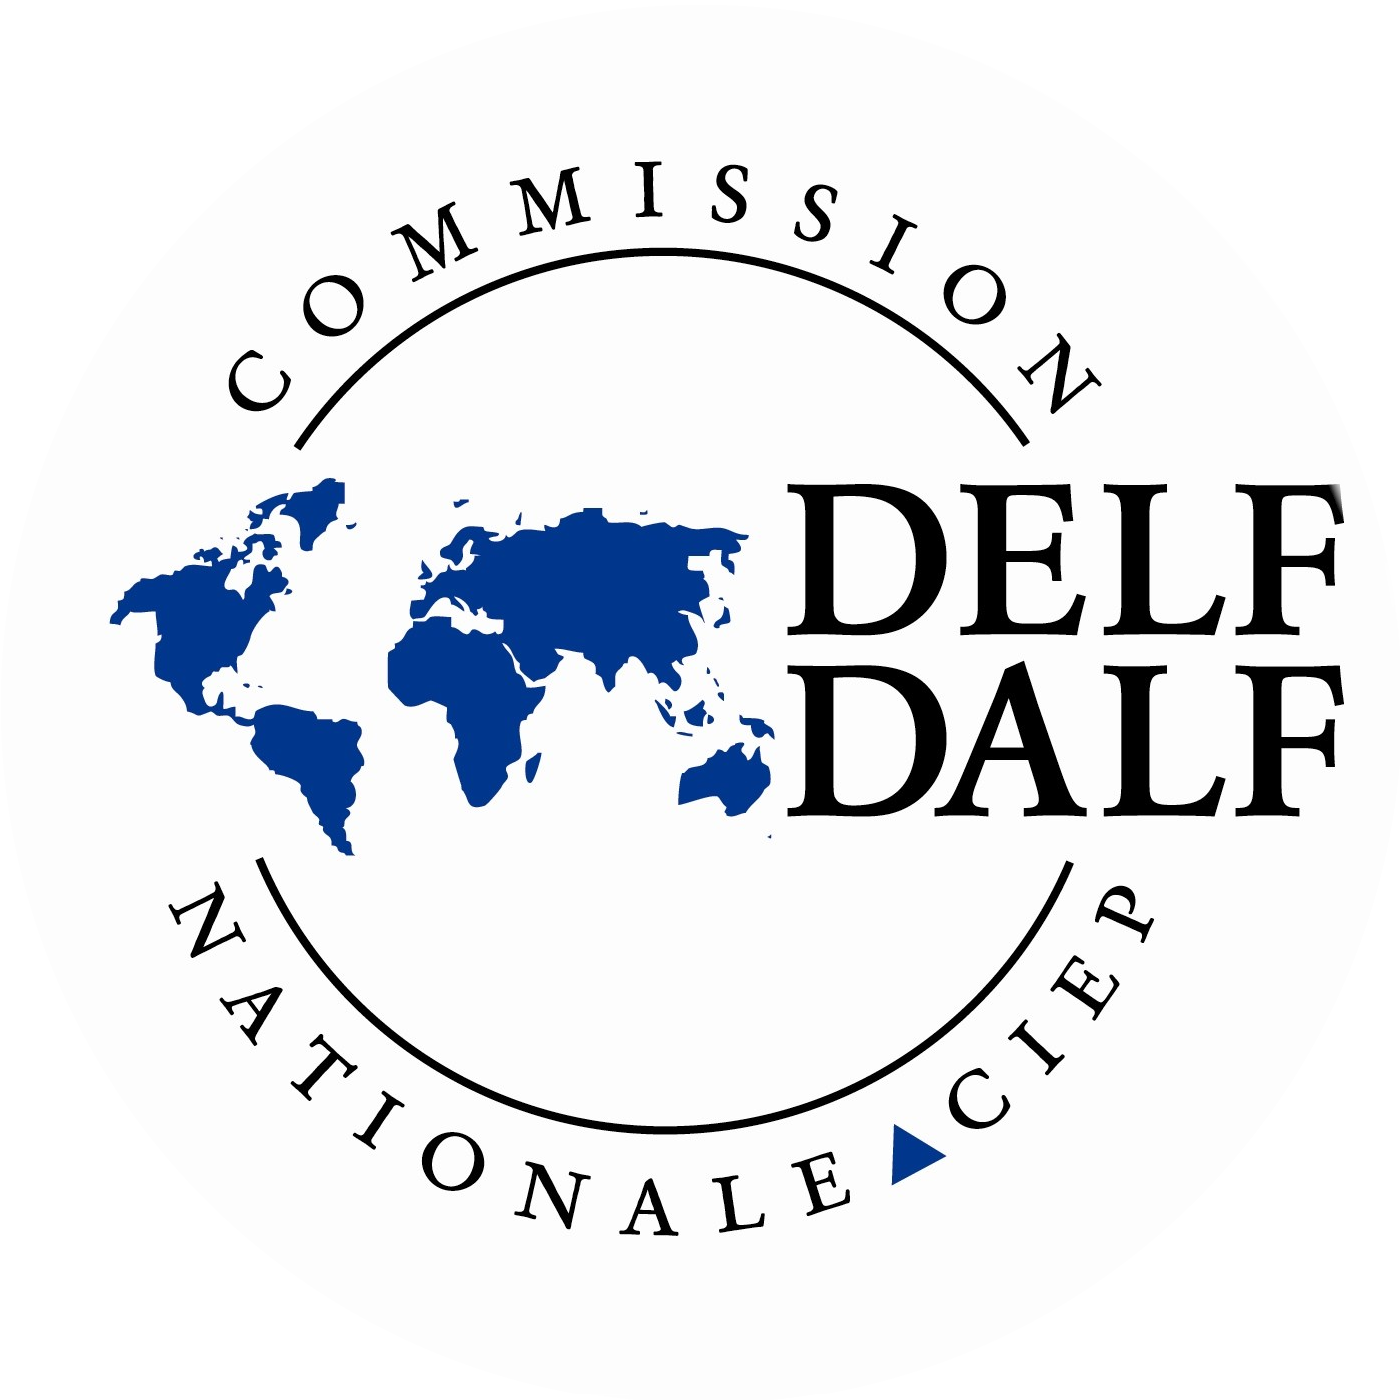 french course online cours de français en ligne delf dalf round